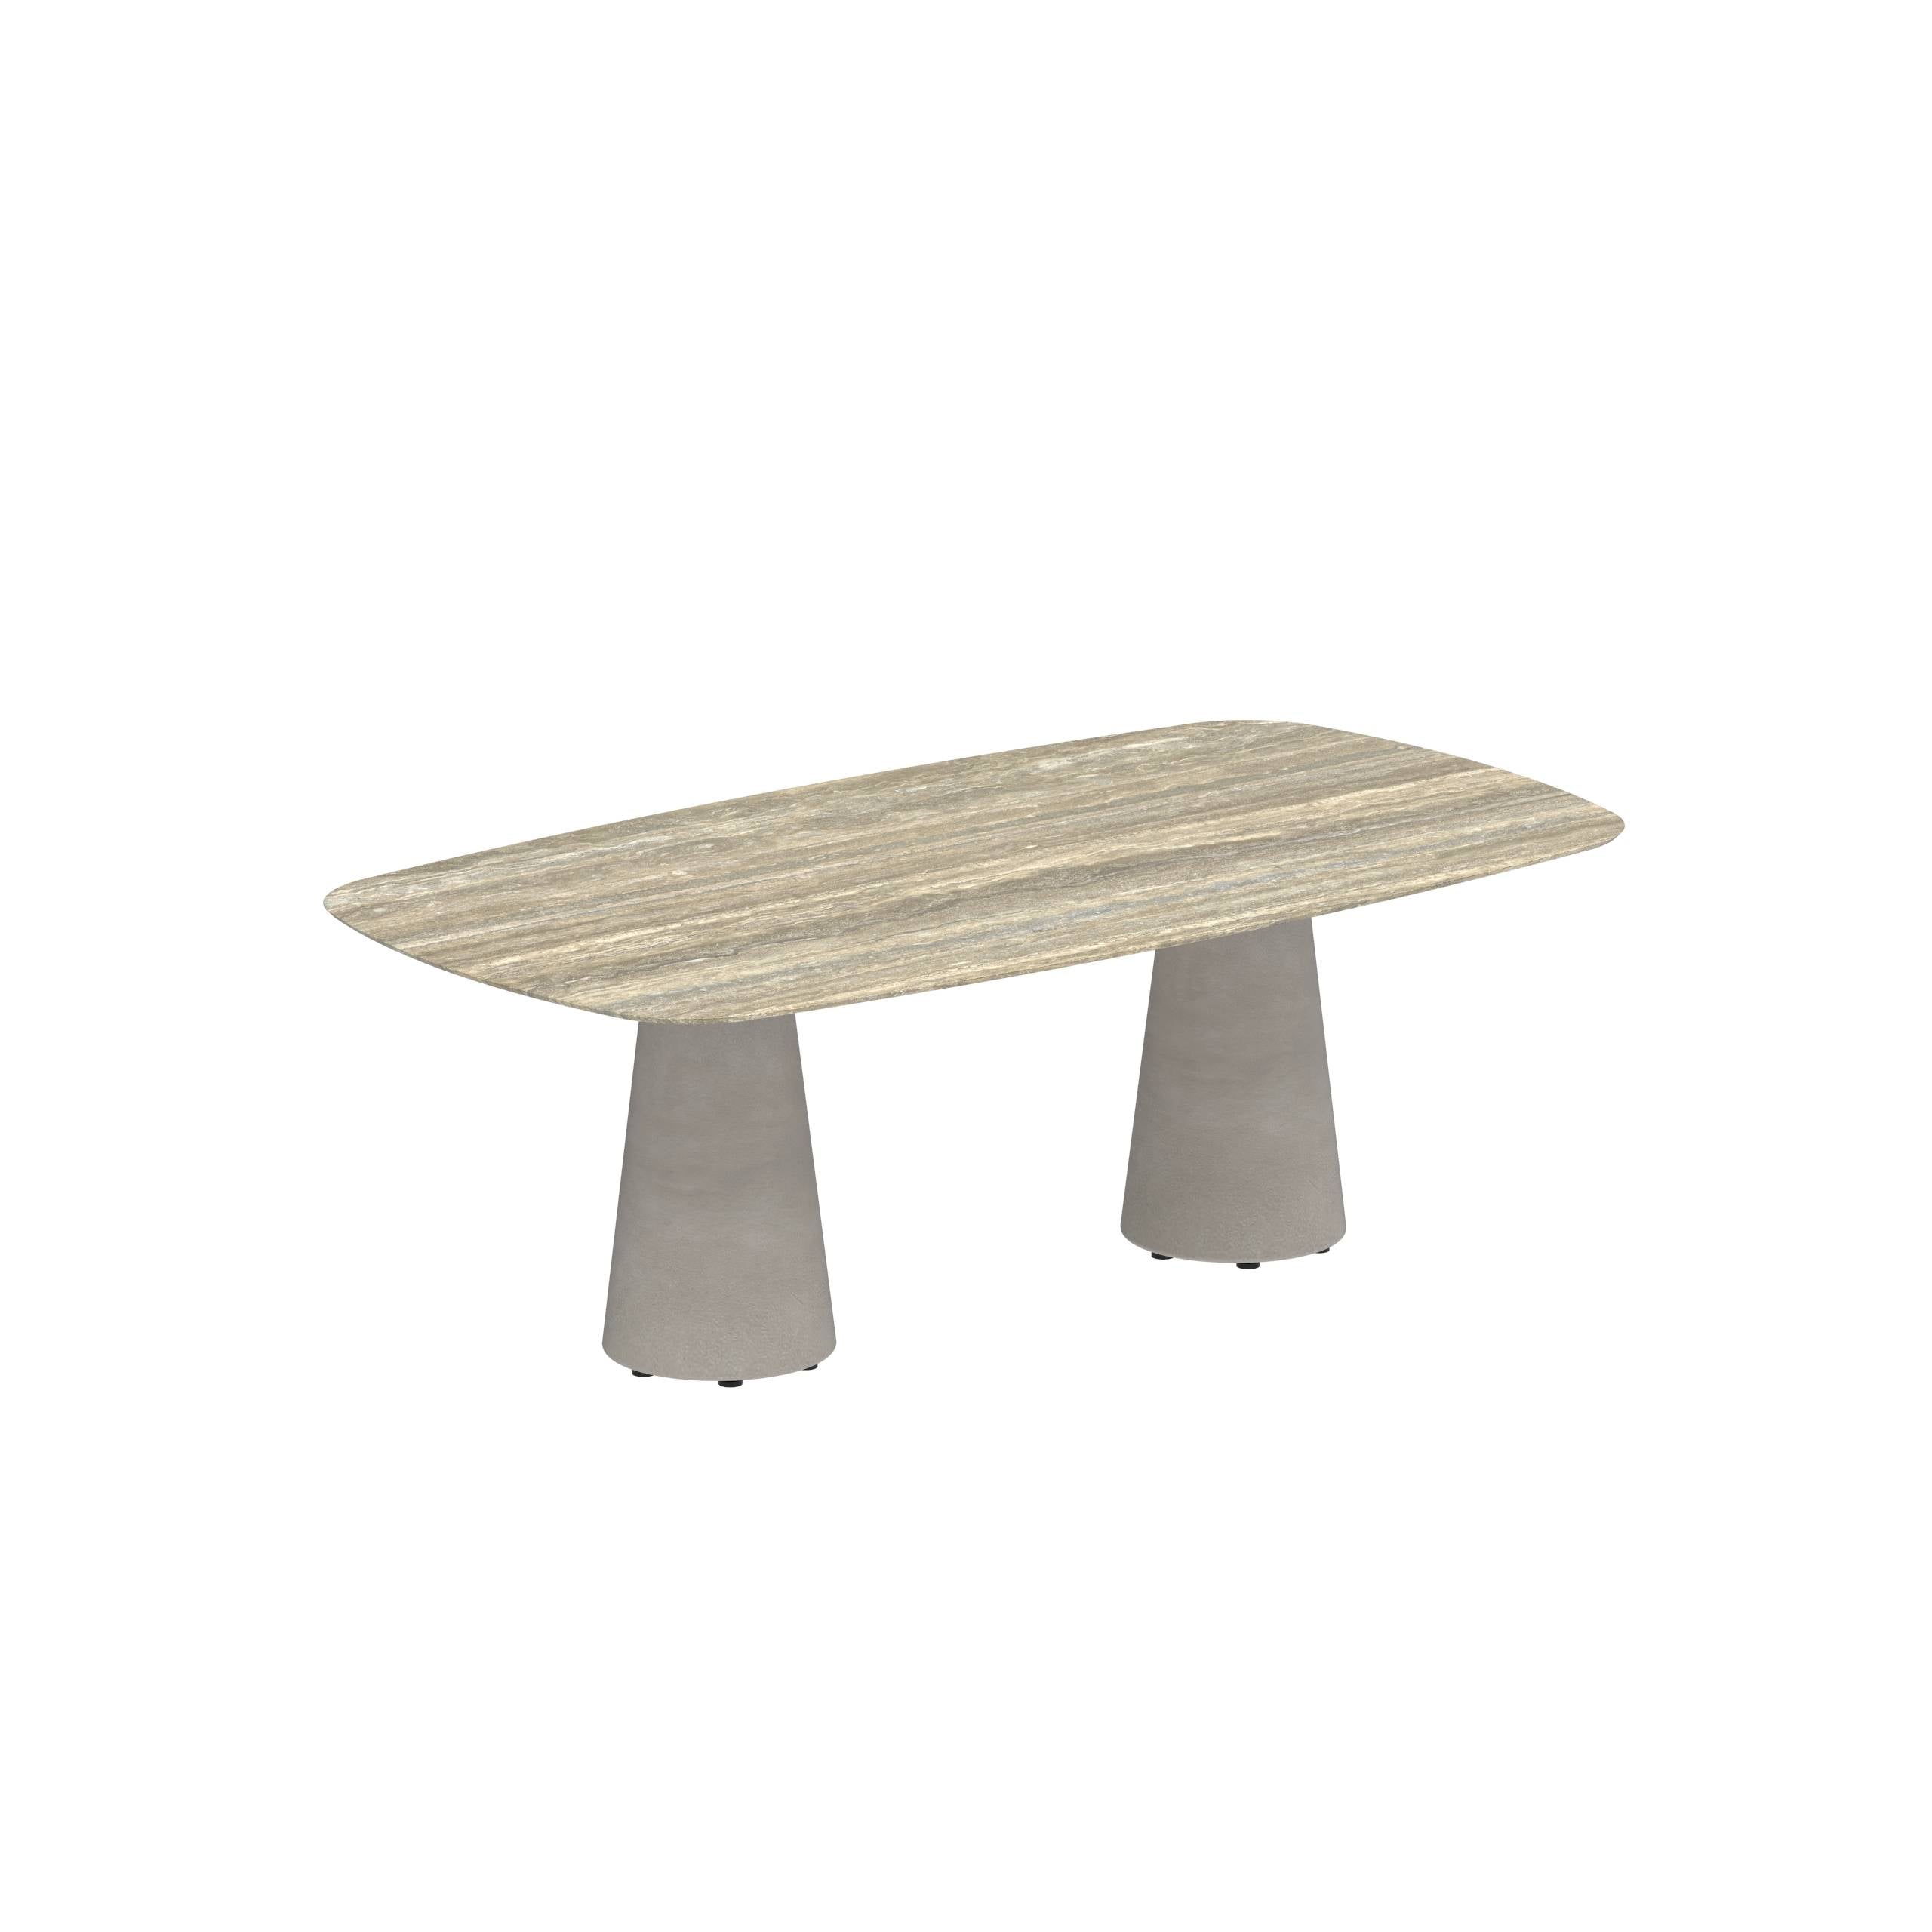 Conix Table 220x120 Cm Legs Concrete Cement Grey - Table Top Ceramic Travertino